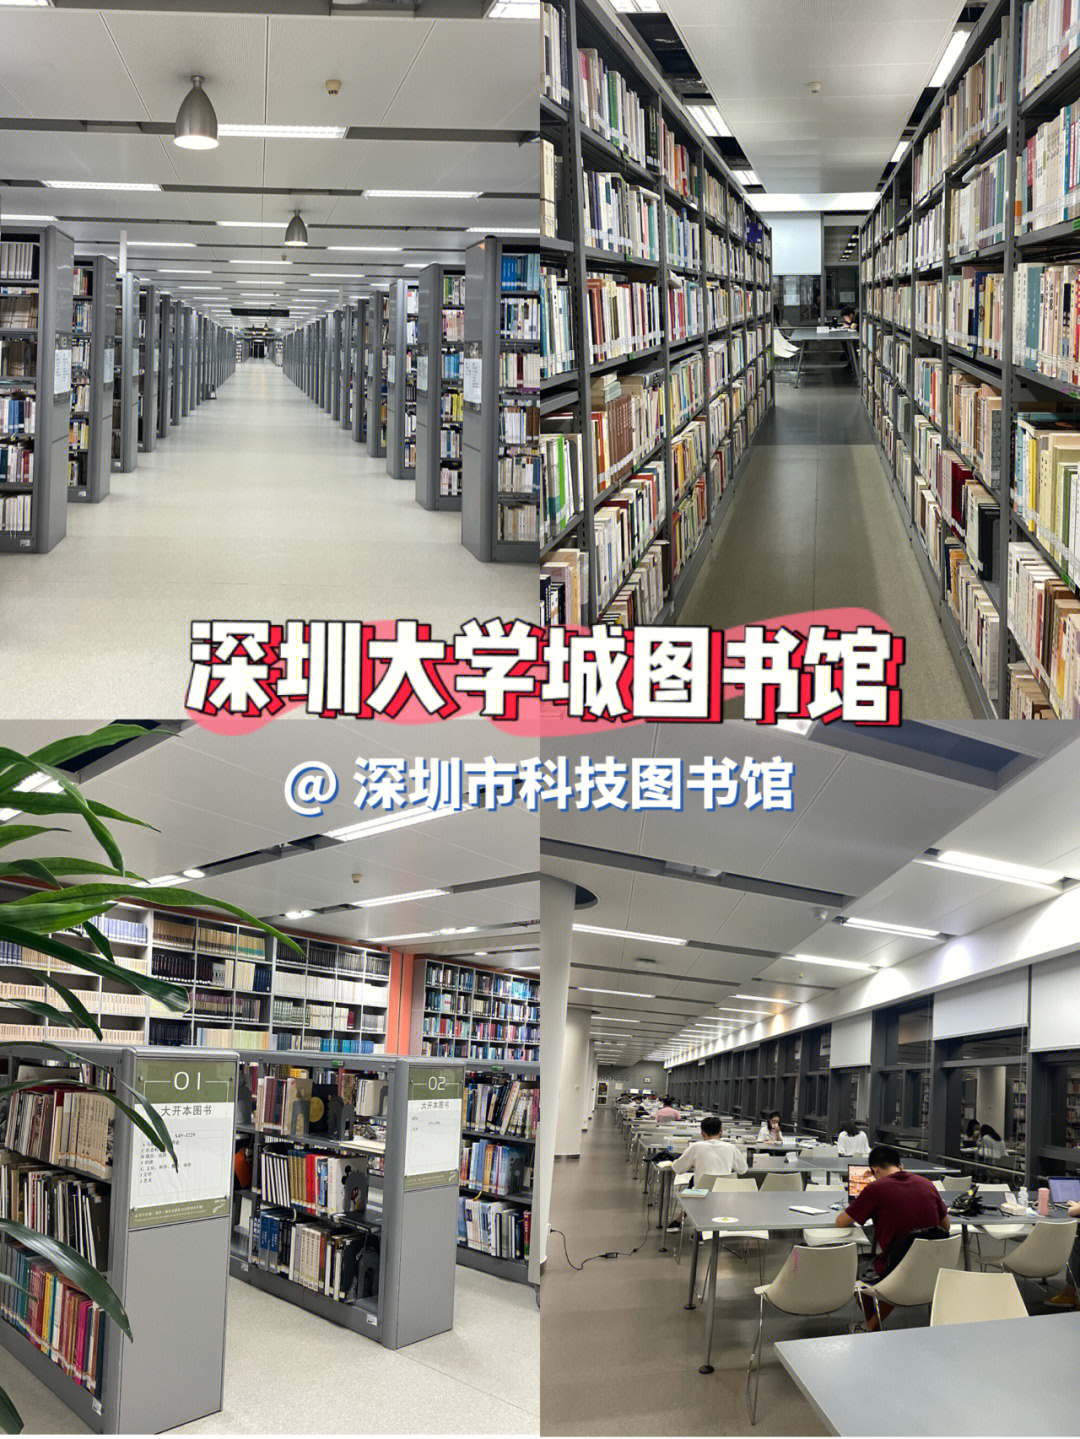 深圳大学城图书馆沉浸式学习宝地